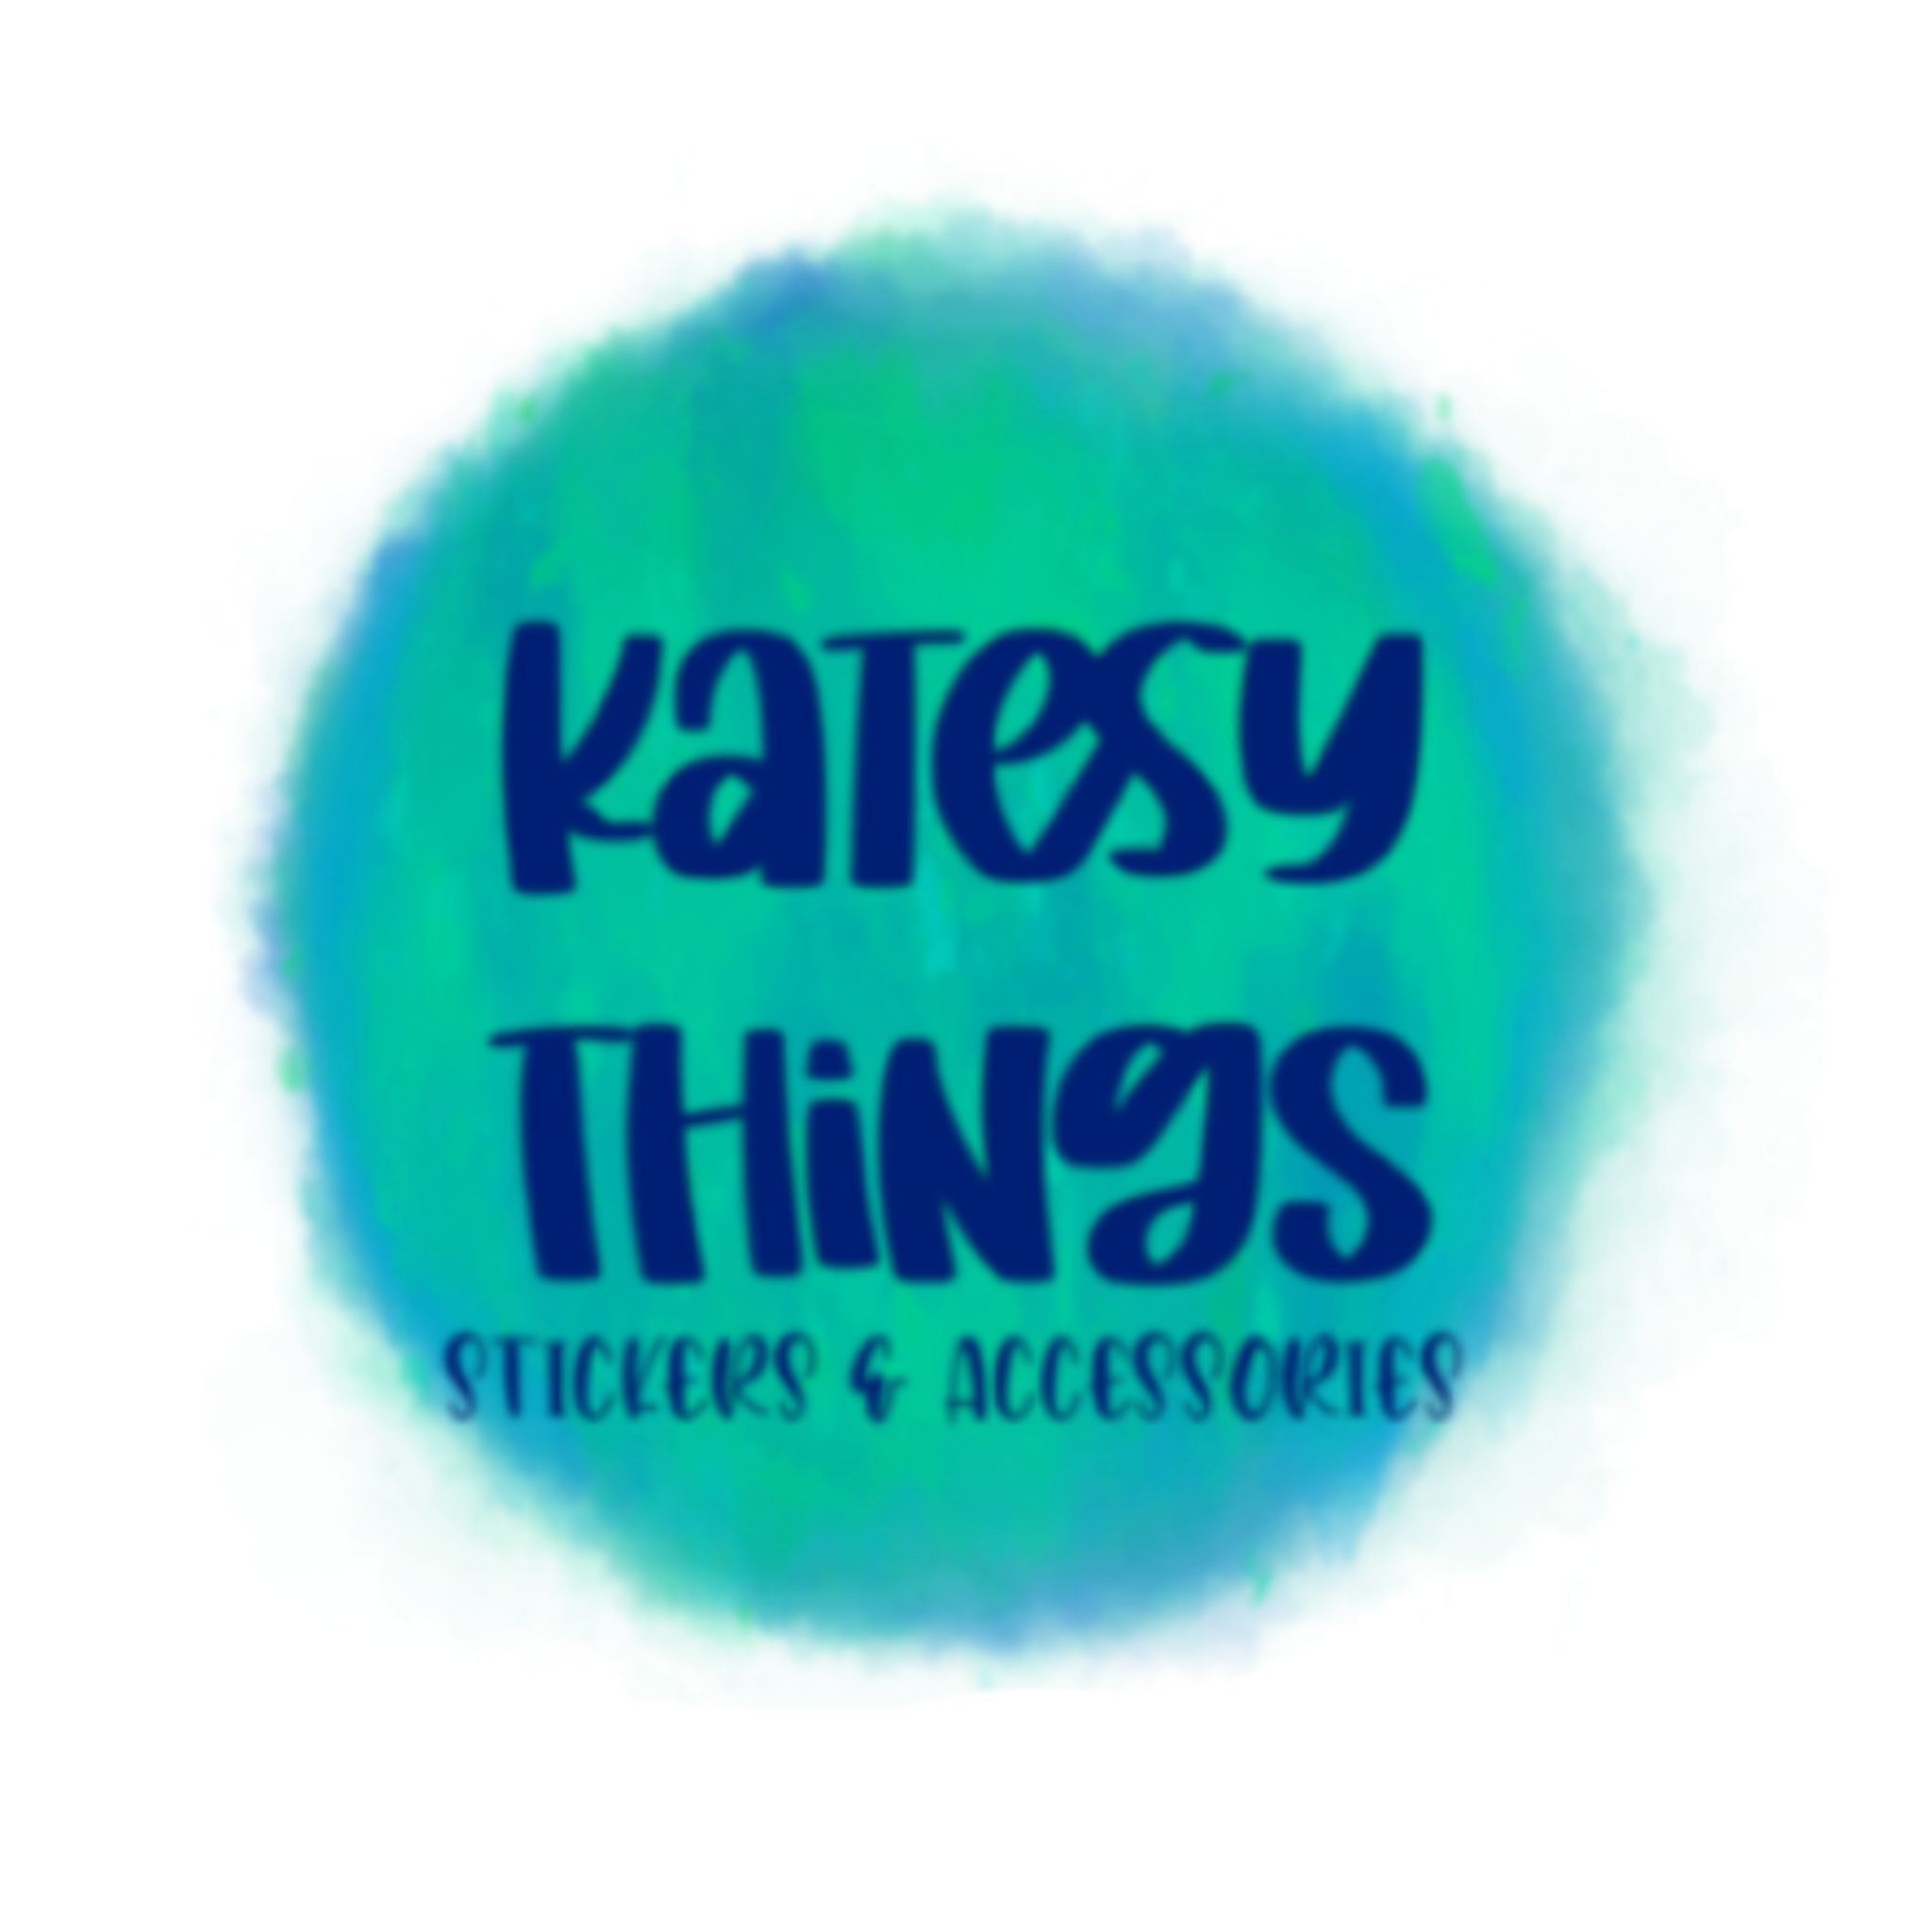 Katesy Things